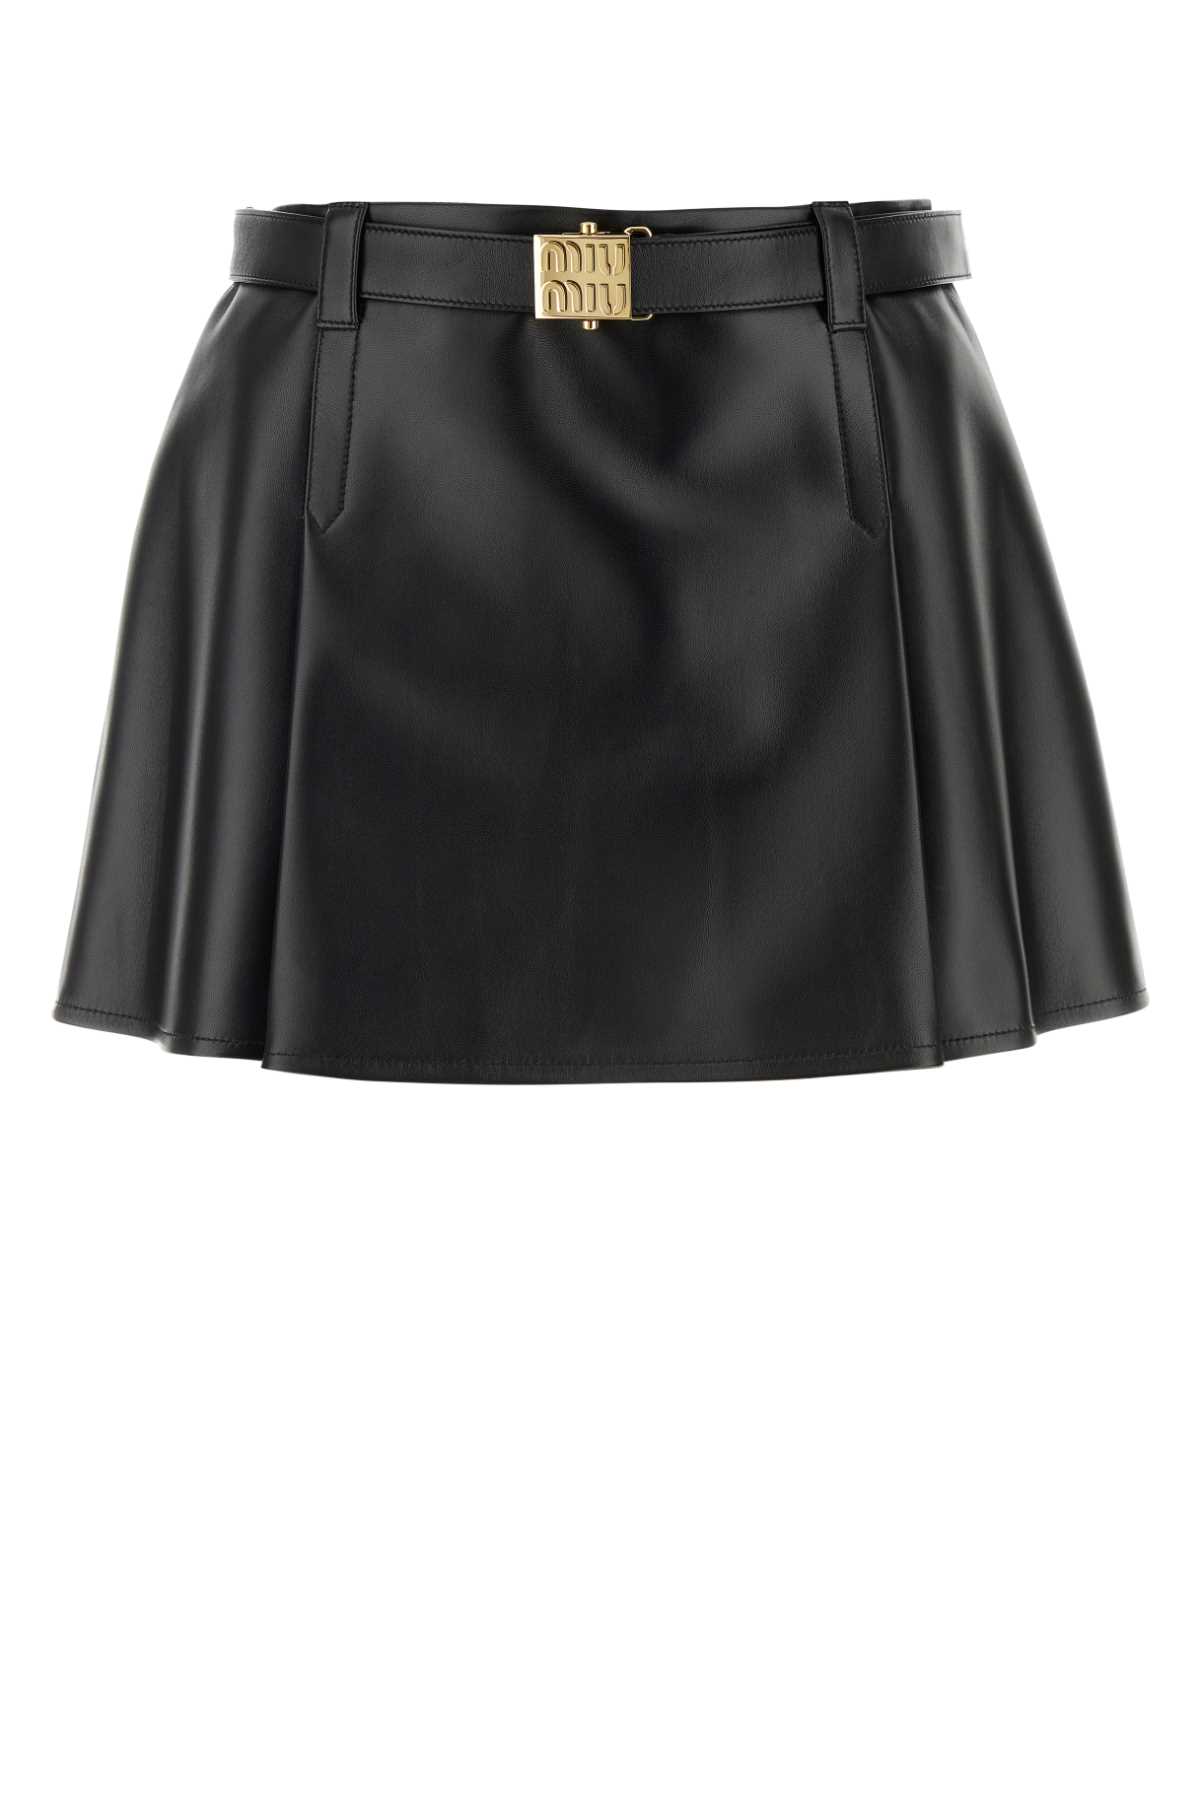 Miu Miu Black Nappa Leather Mini Skirt